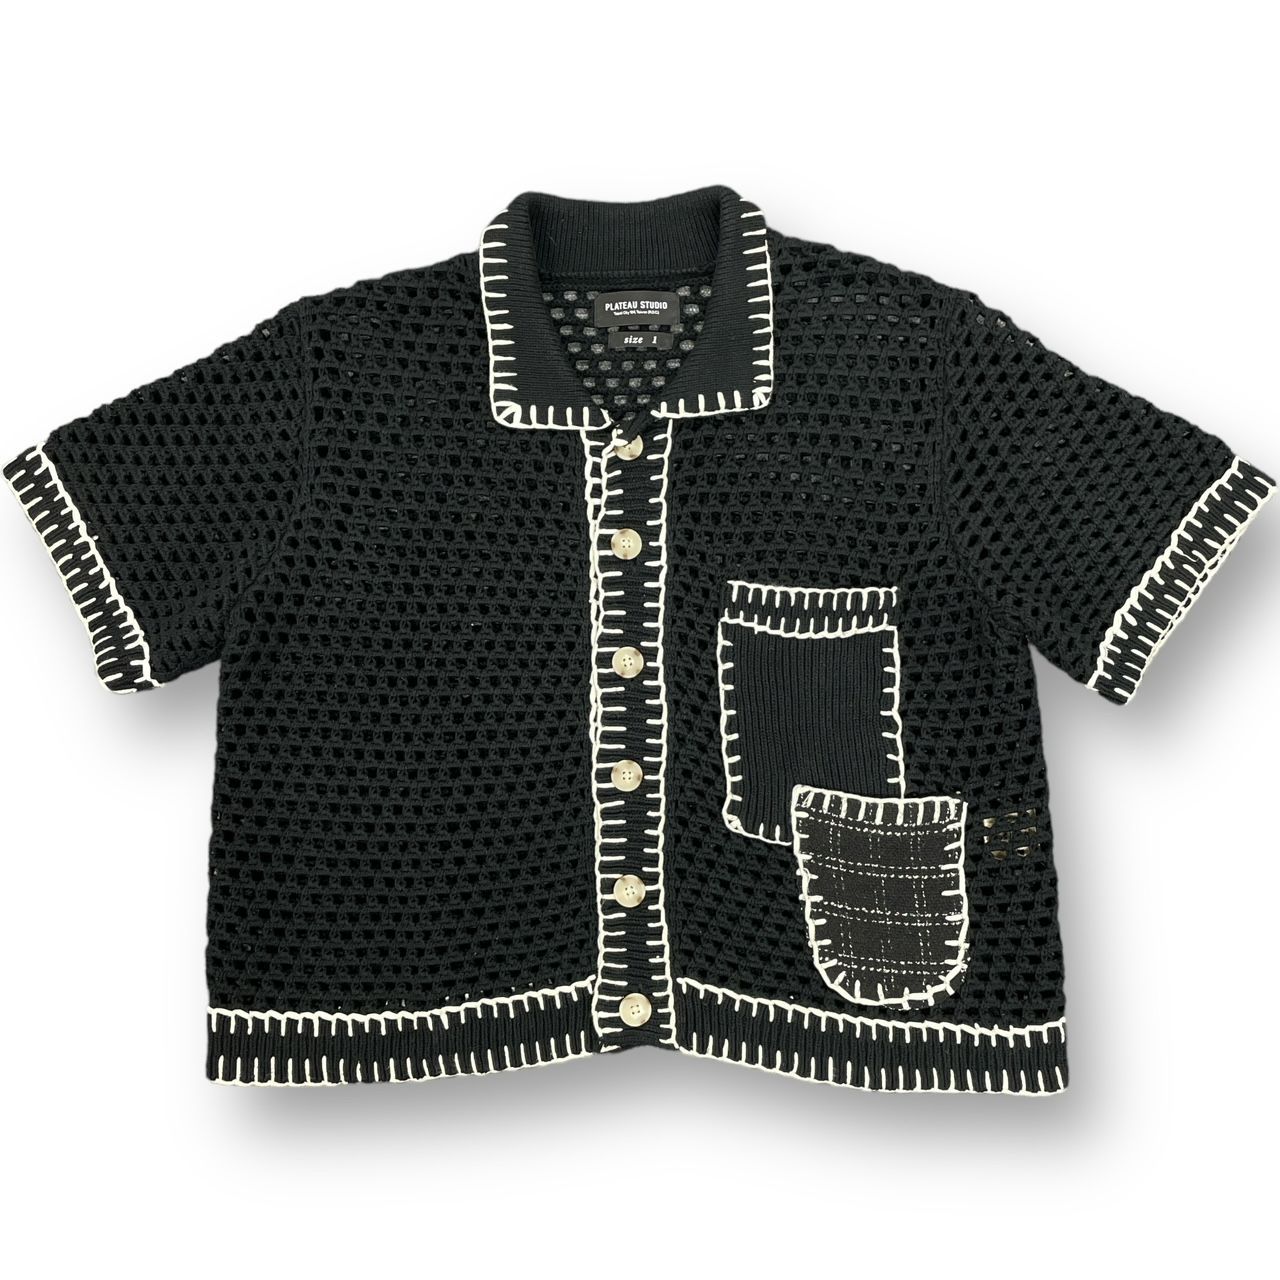 9,430円plateau studio-dong dong boro knit shirt